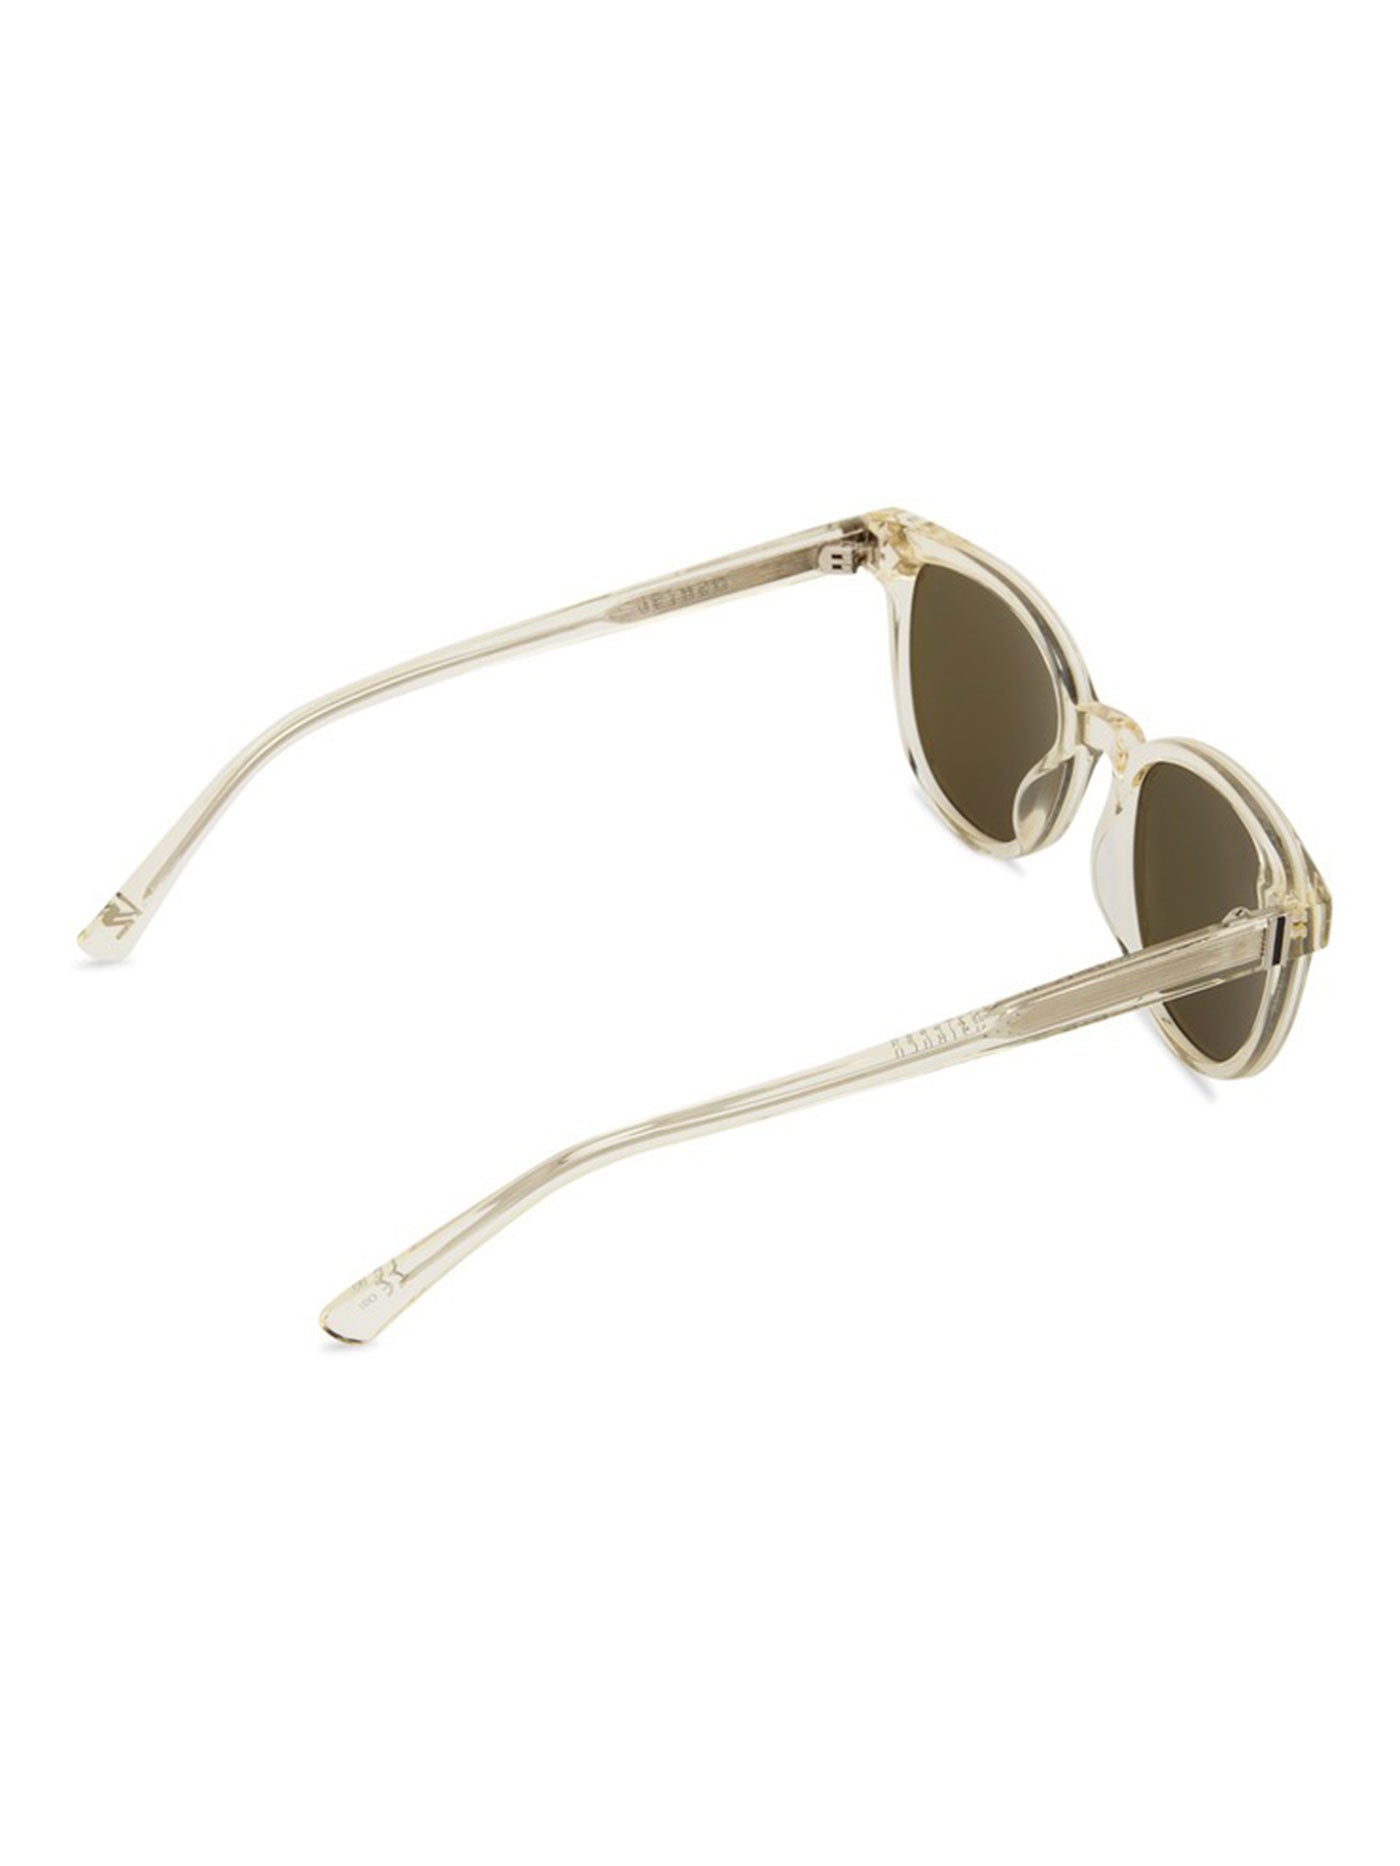 Von Zipper Jethro Champagne Trans Gloss/Vint Grey Sunglasses